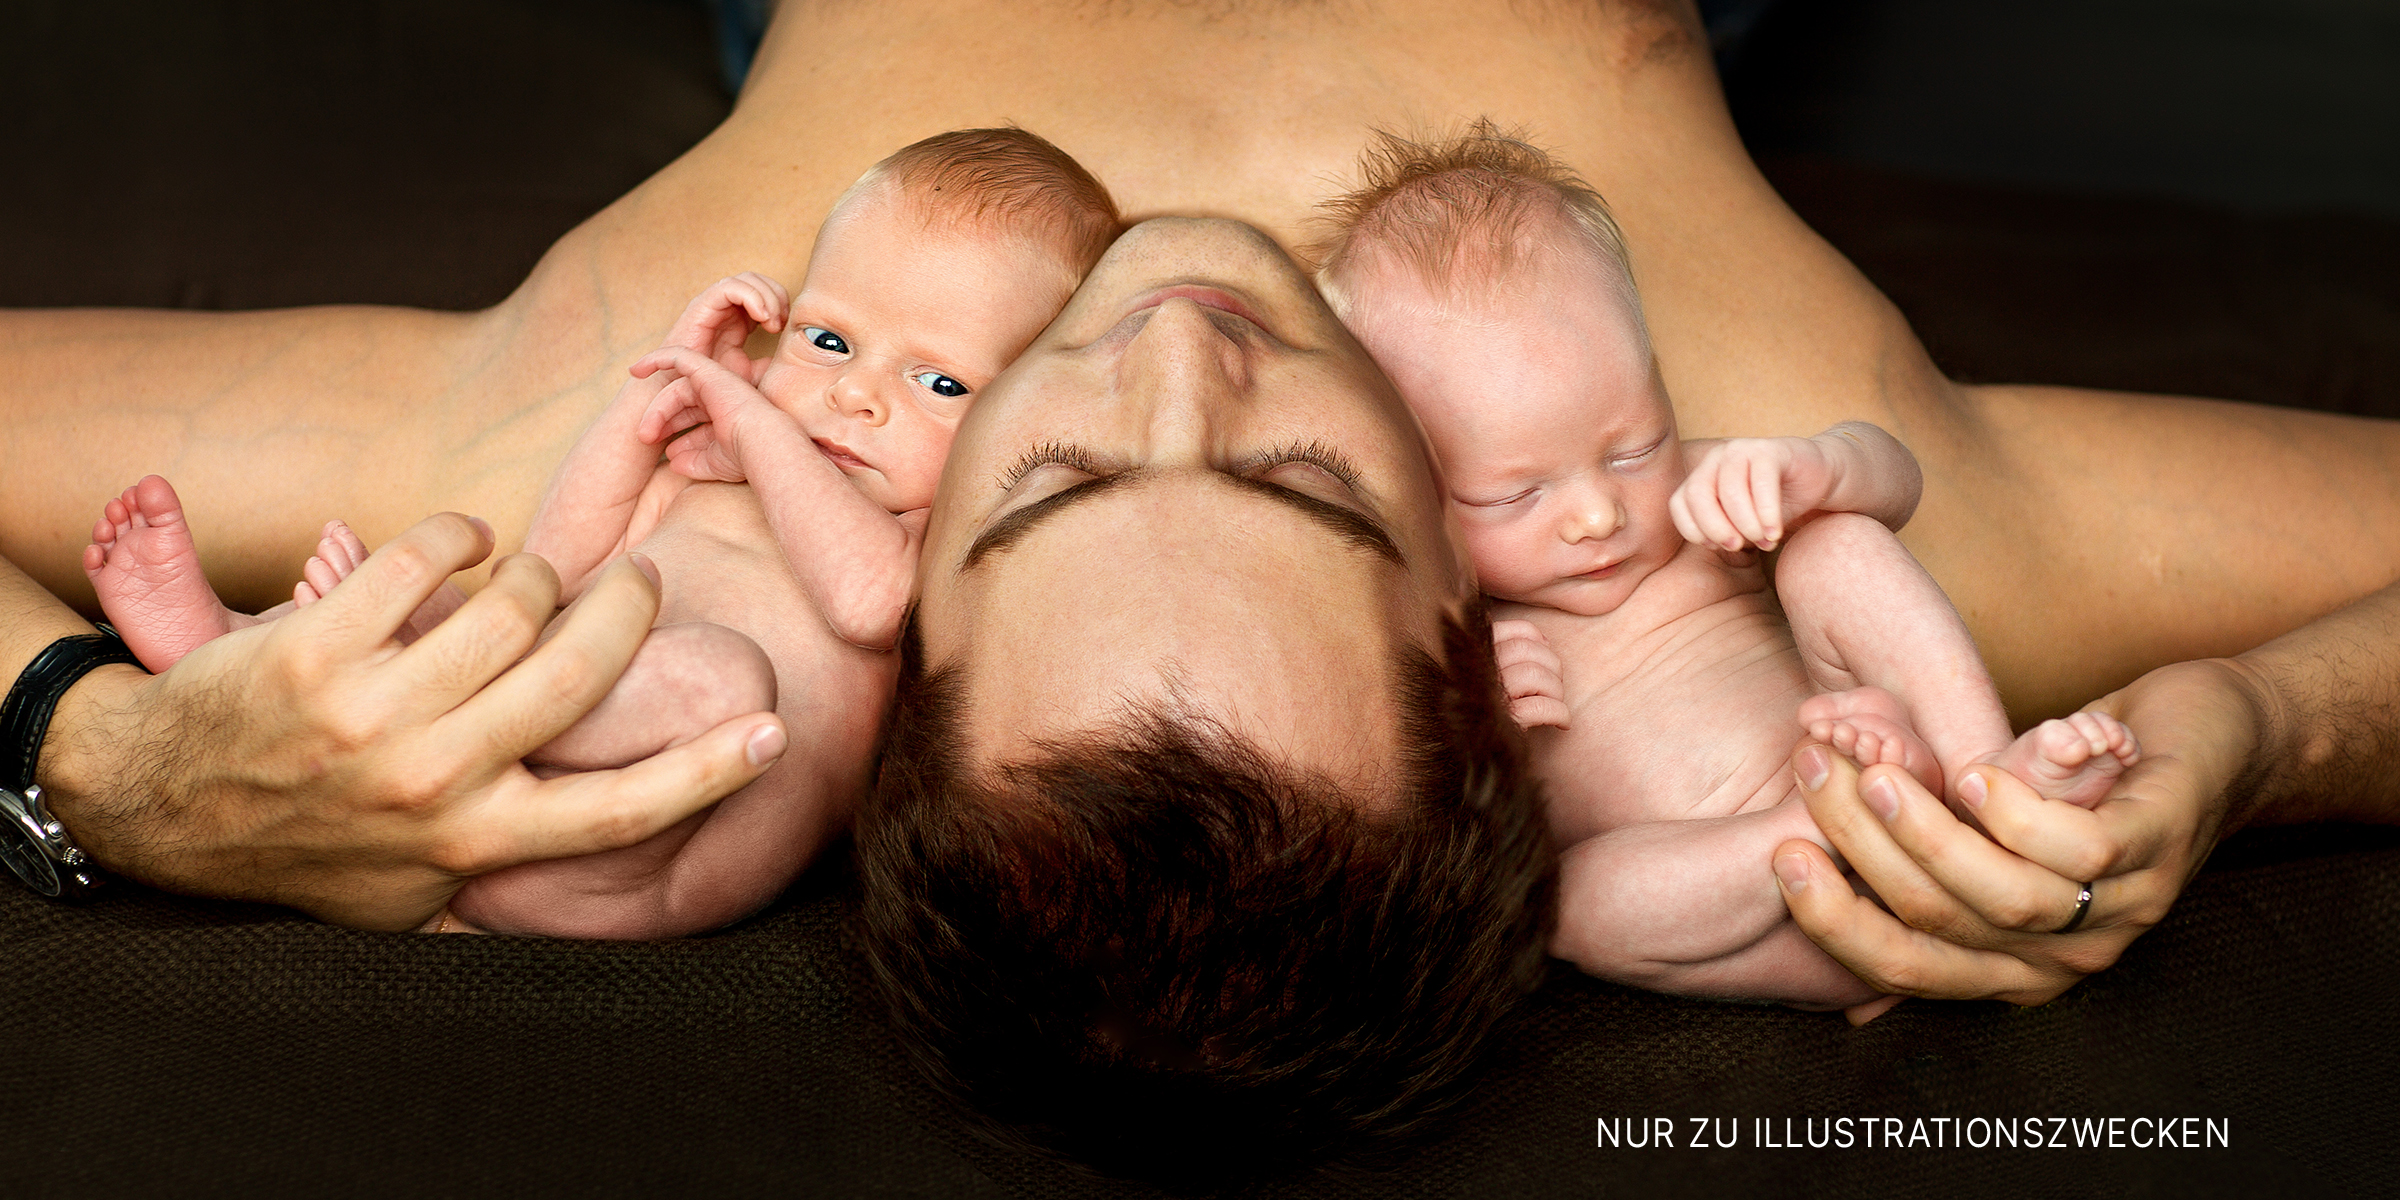 Mann mit zwei Säuglingen. | Quelle: Shutterstock